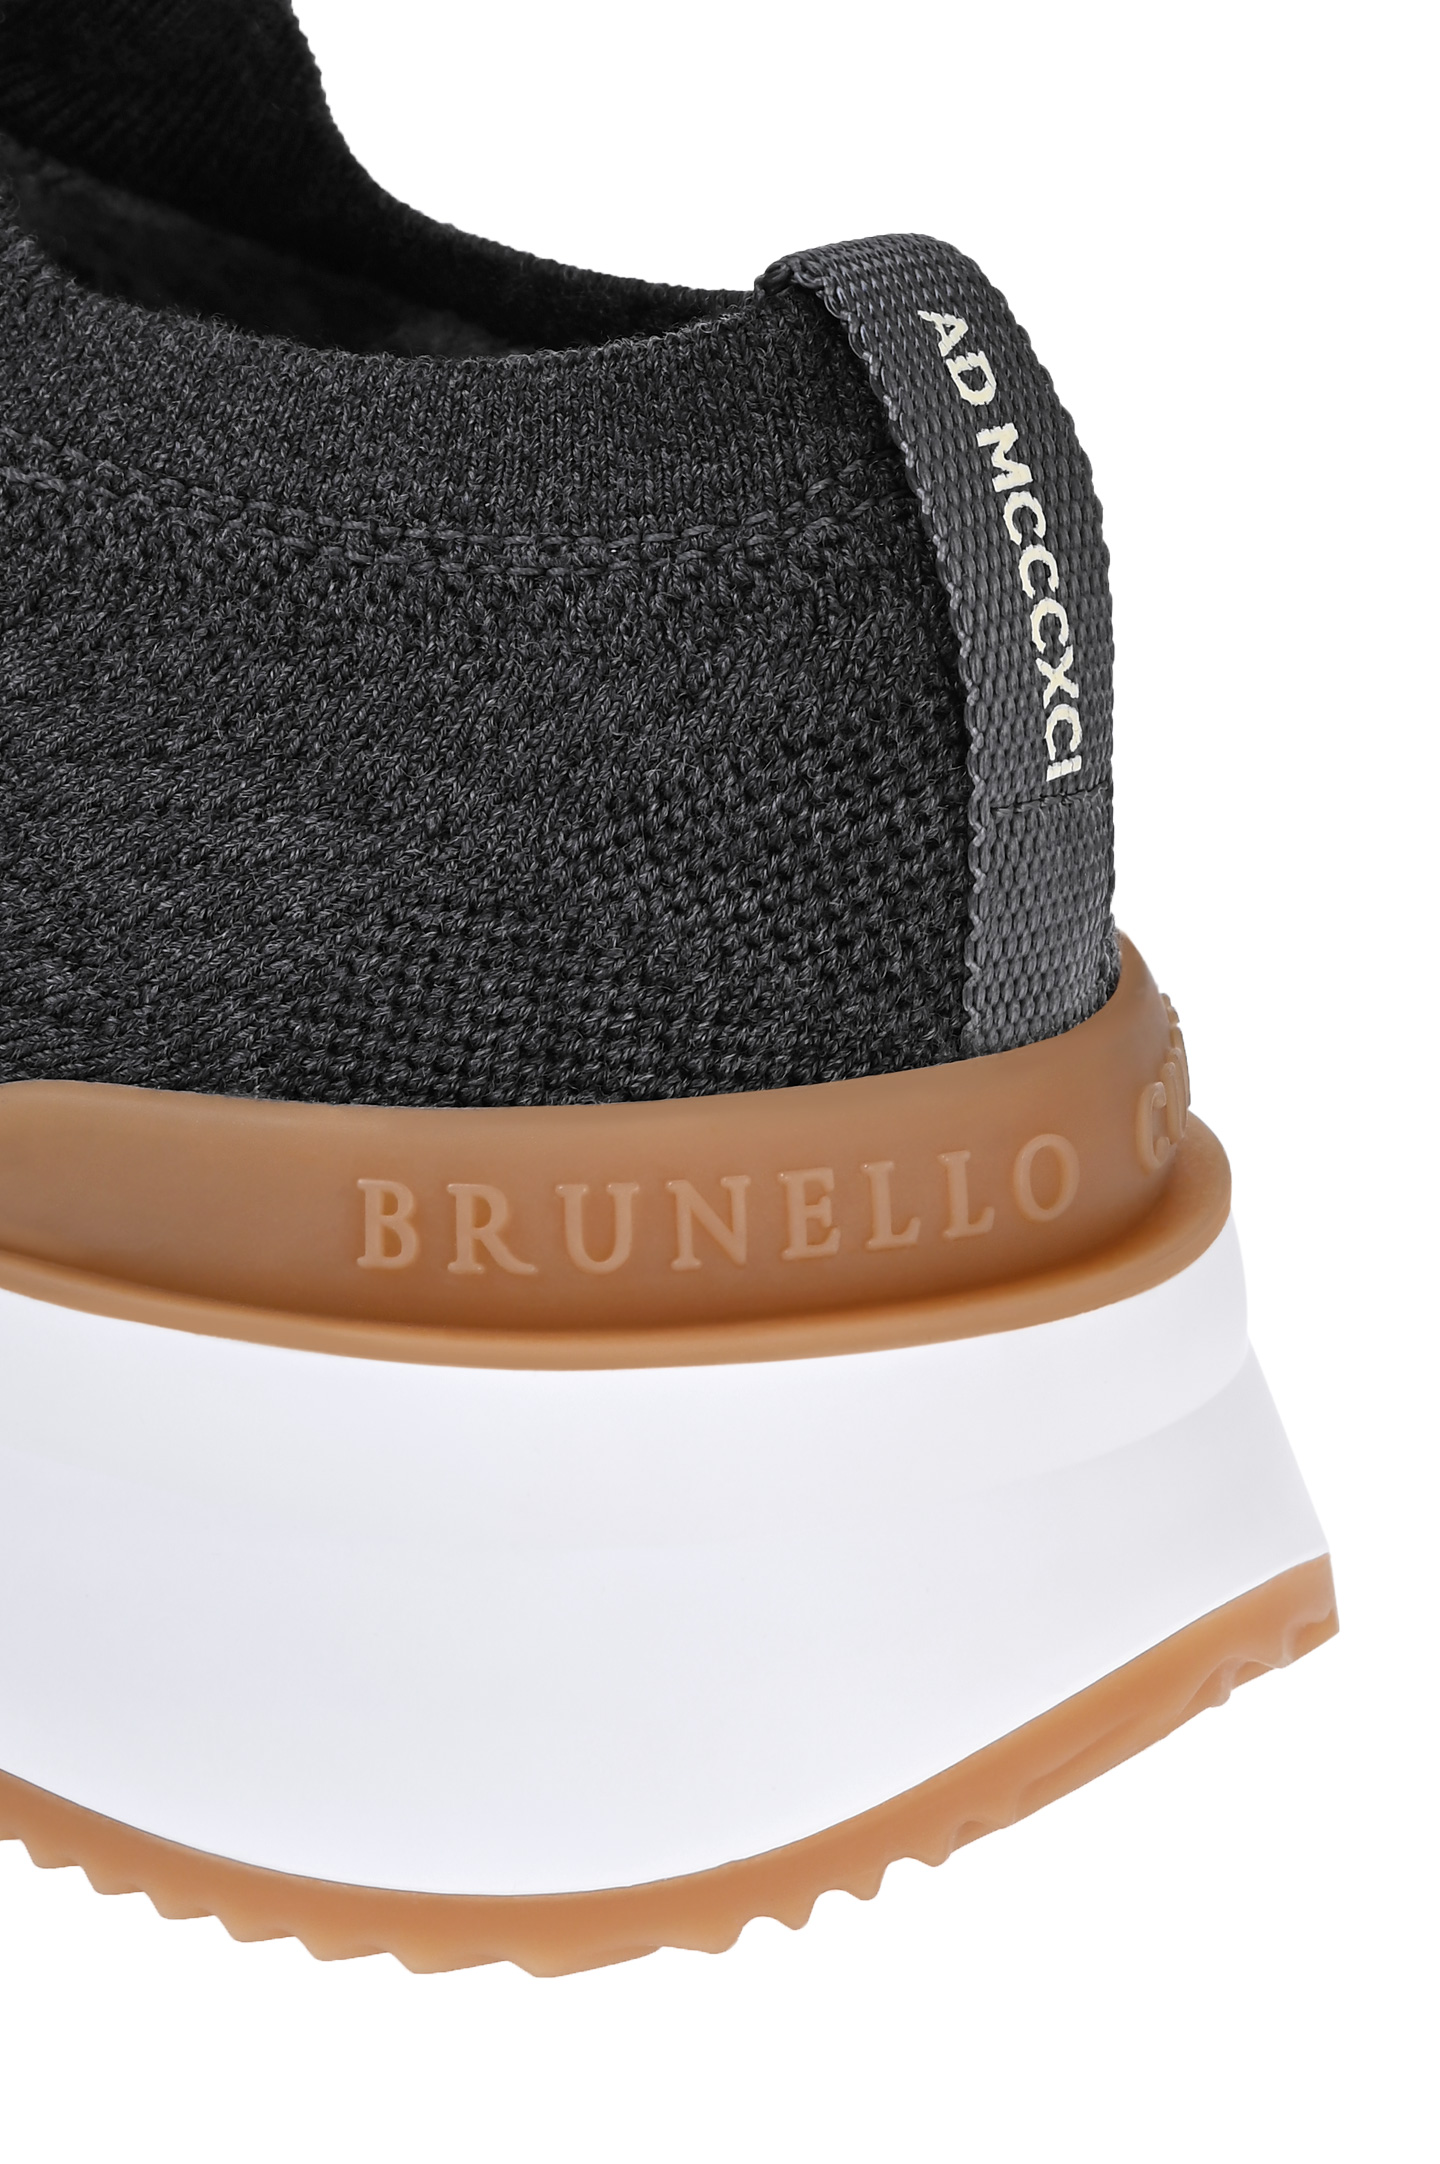 Кроссовки BRUNELLO  CUCINELLI MZUWLBO253, цвет: Темно-серый, Мужской